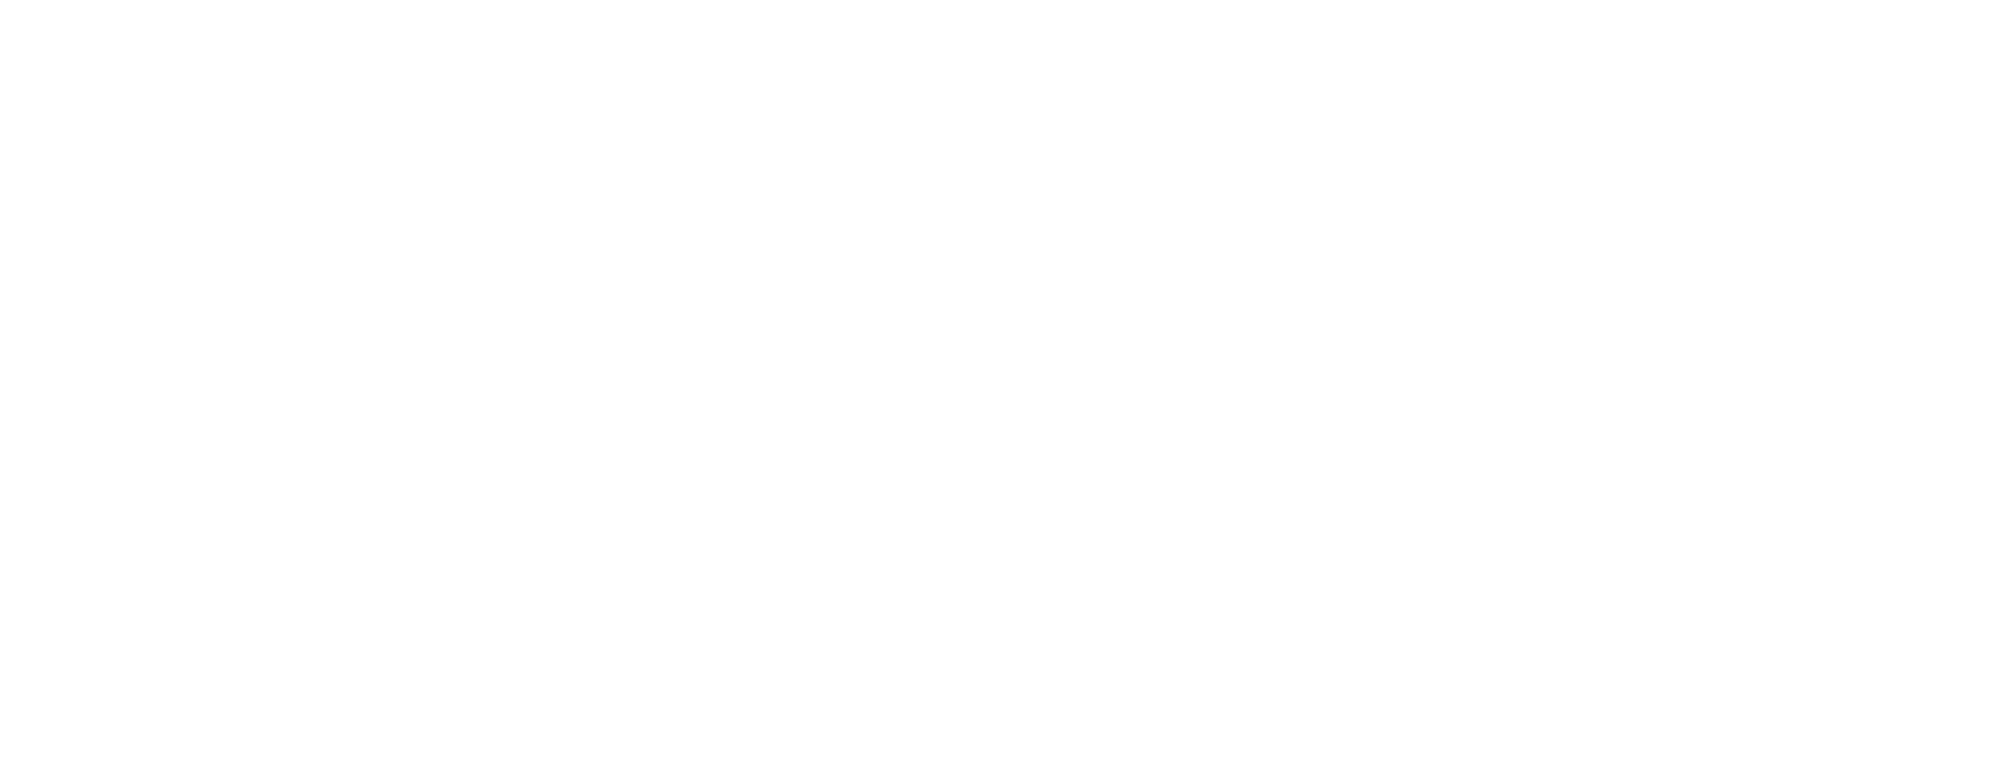 hbb logo white